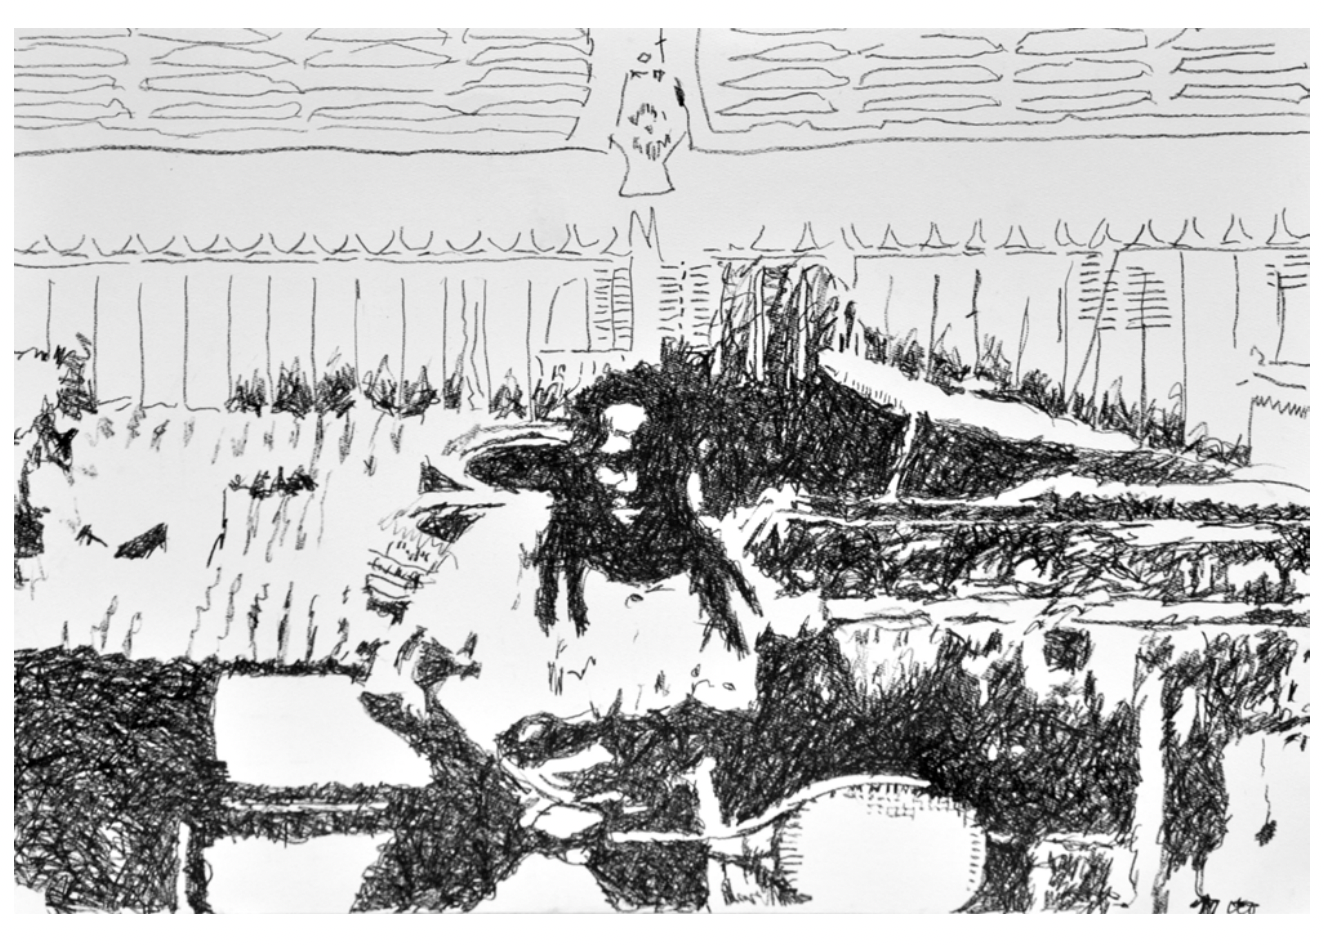 Les fantômes du jour II, 2022, pastel à l'huile sur papier
105 x 75 cm